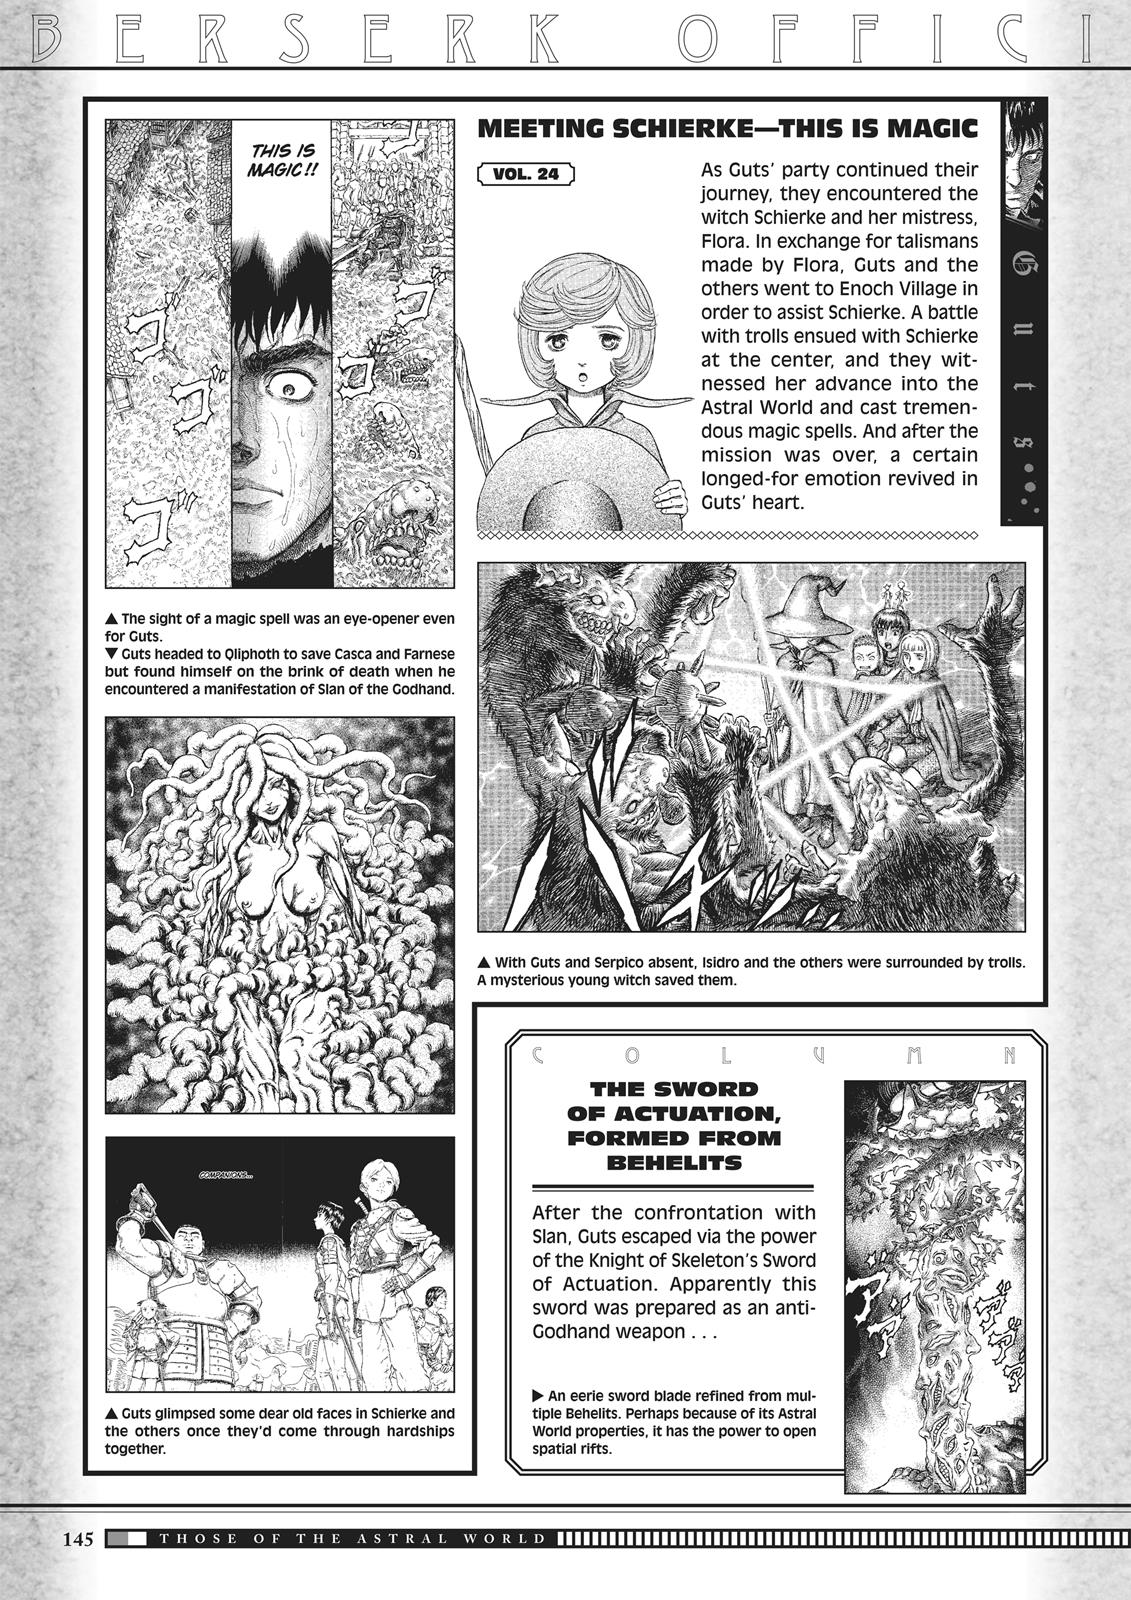 Berserk Manga Chapter 350.5 image 143